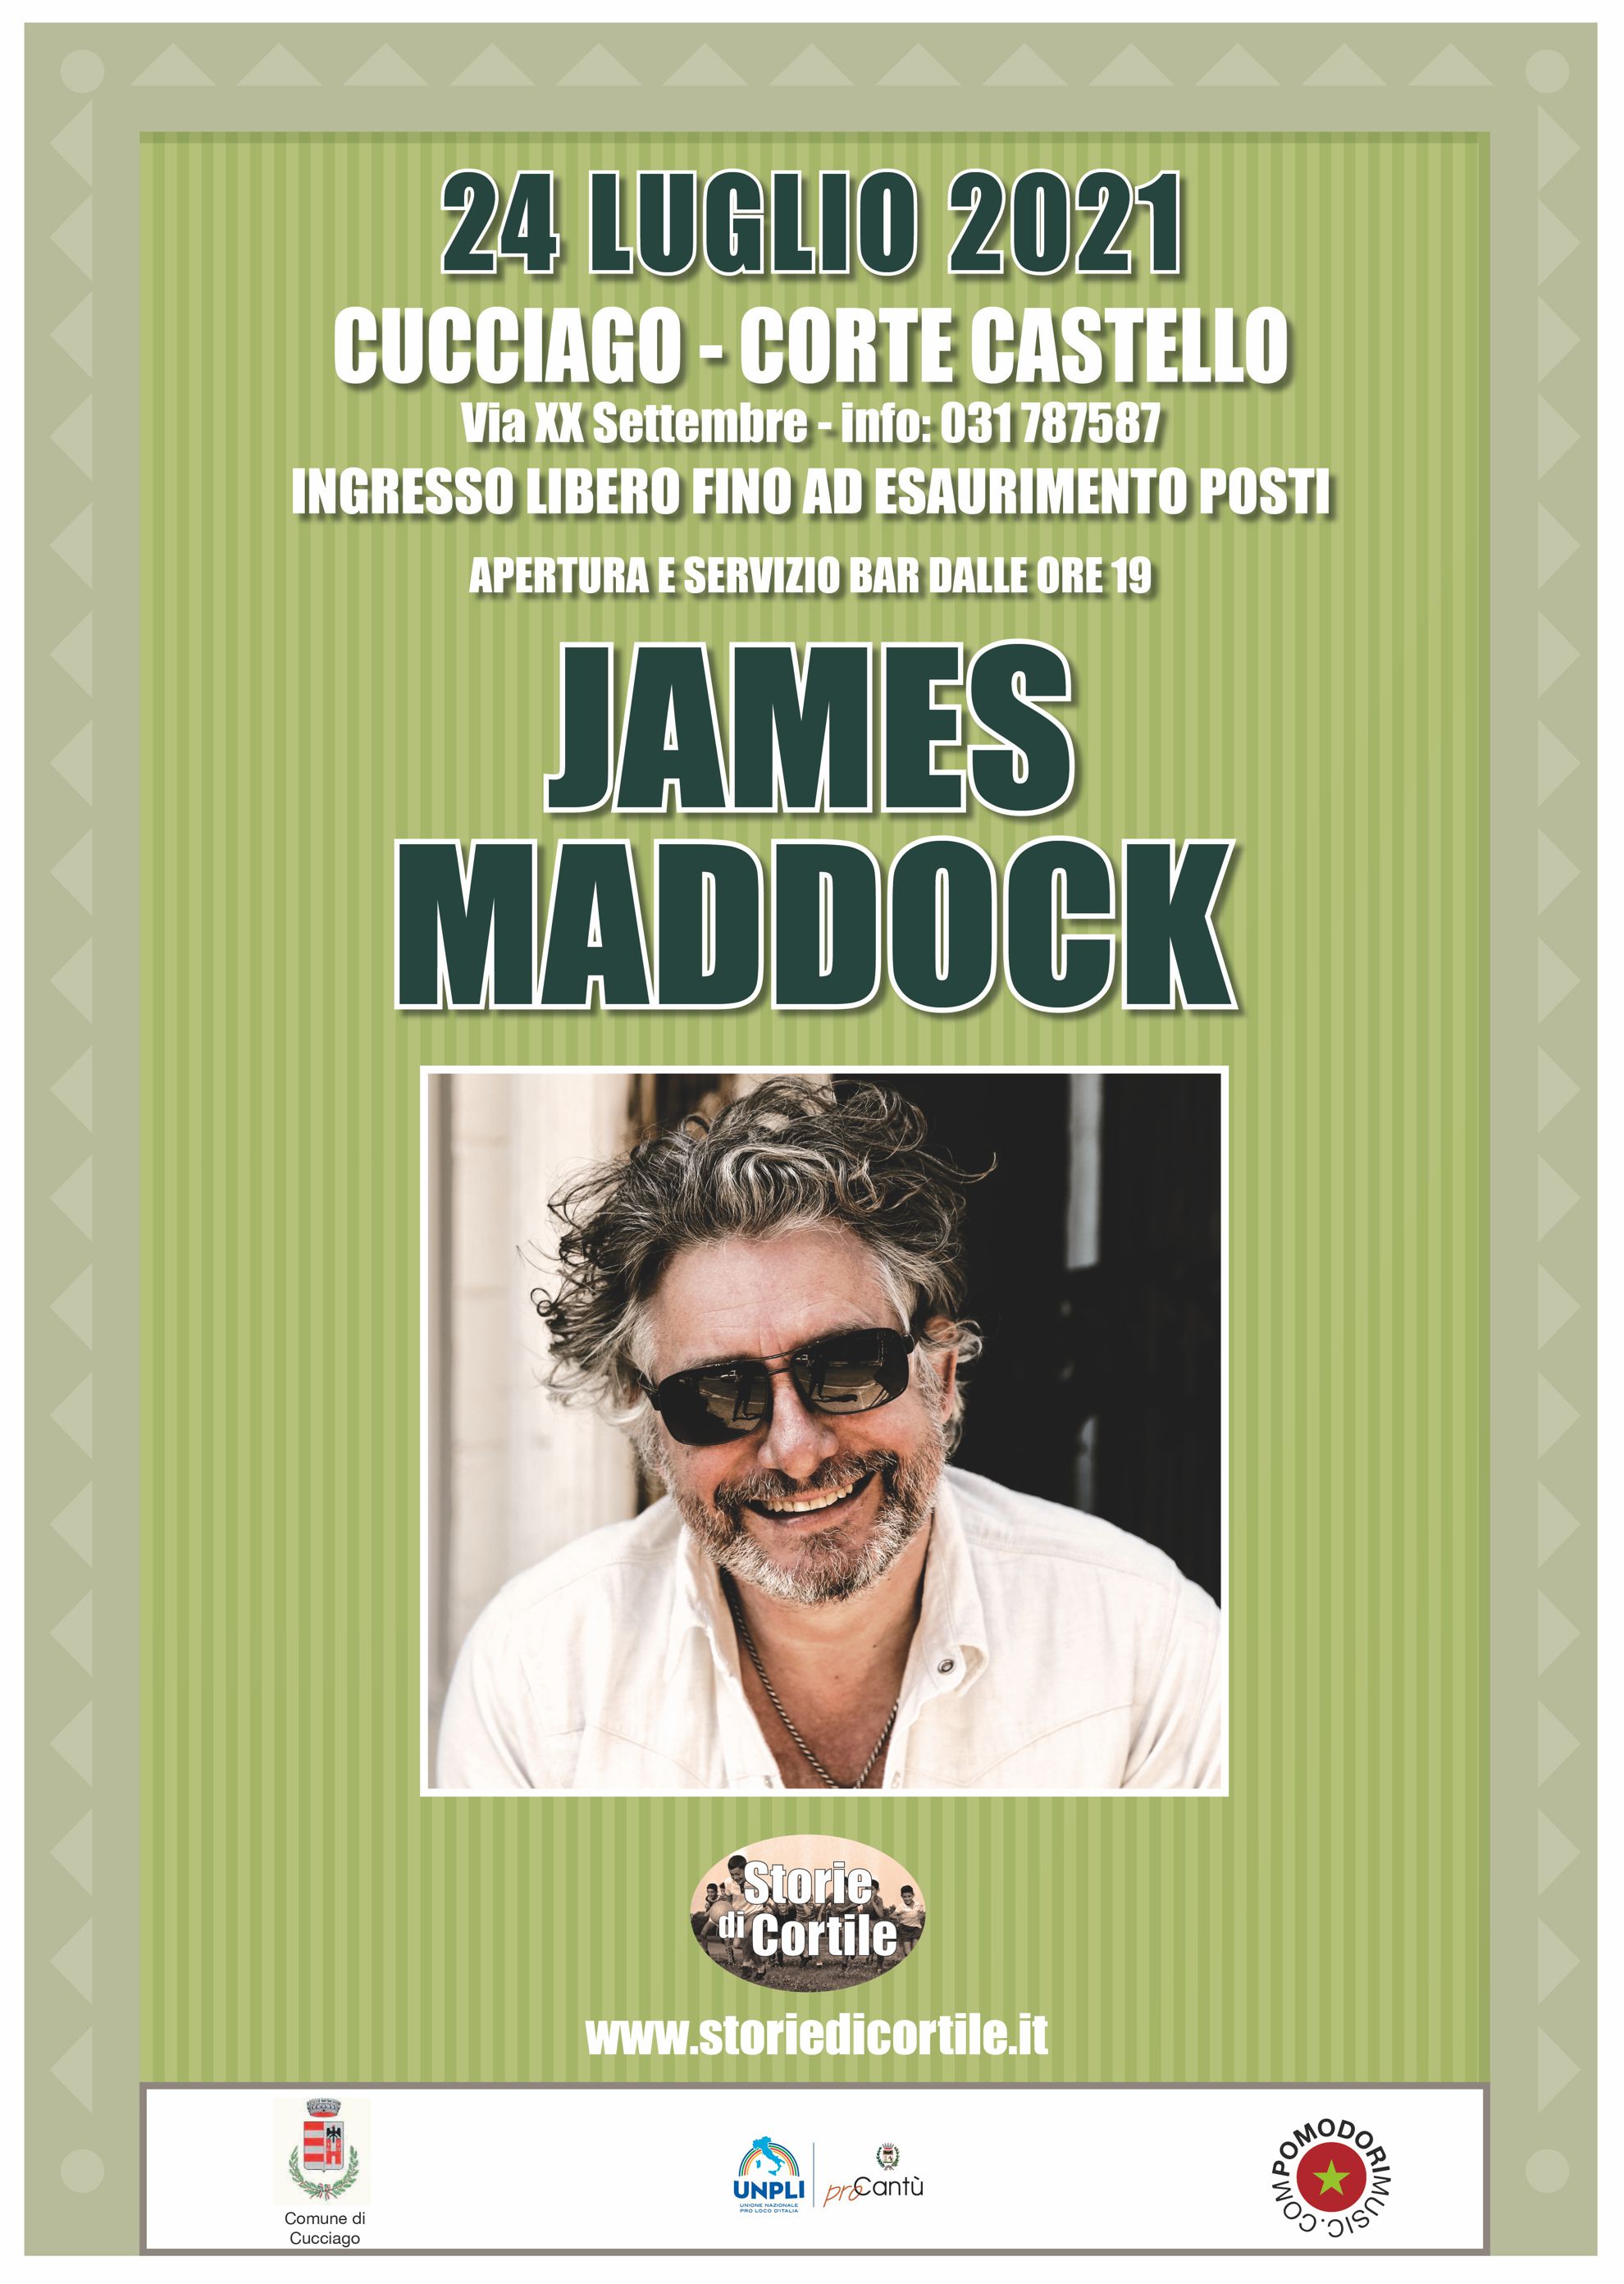 24/07/2021 - Cucciago - James Maddock